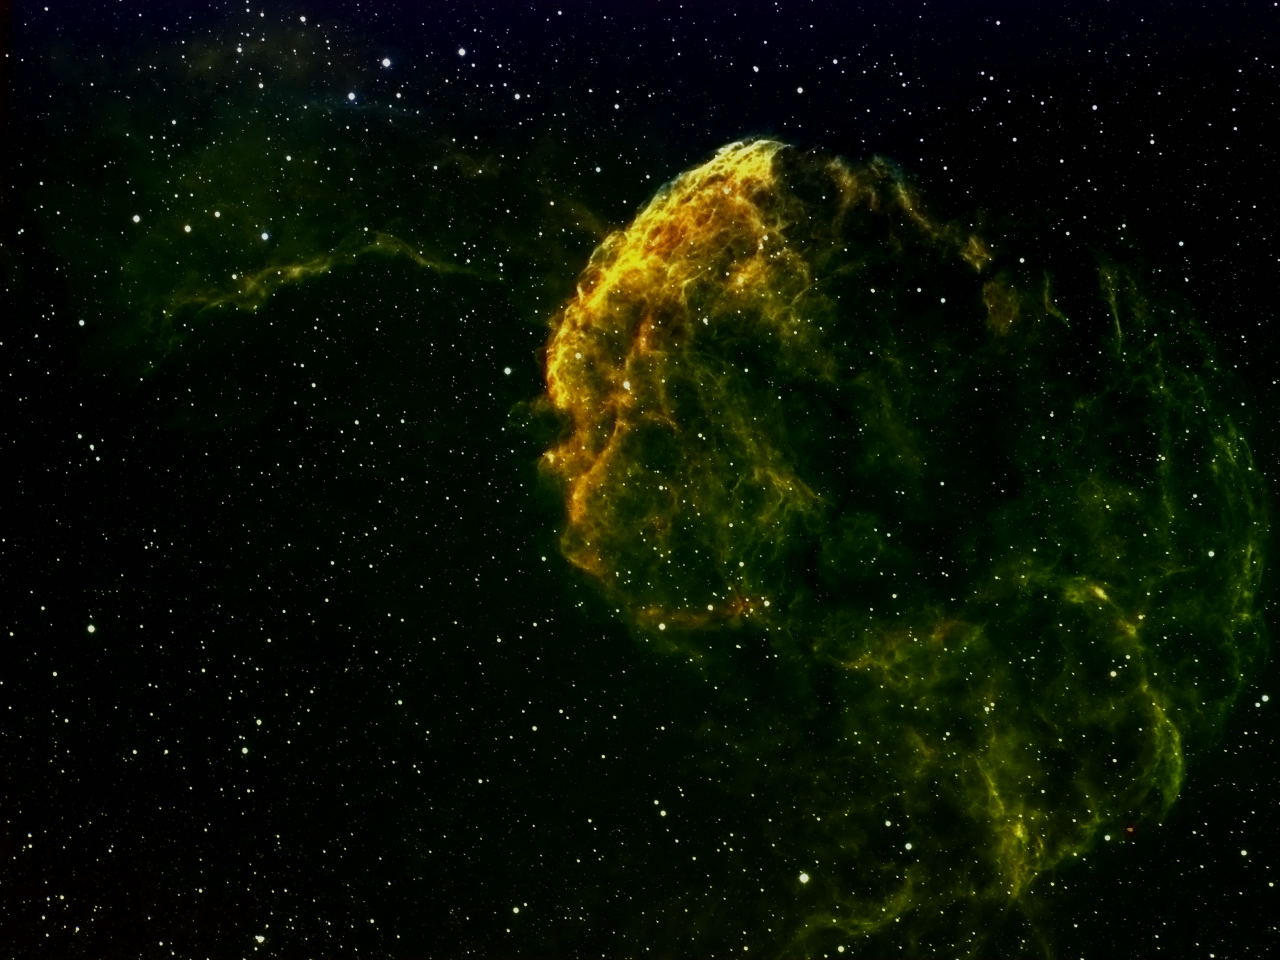 Jellyfish Nebula - IC 443